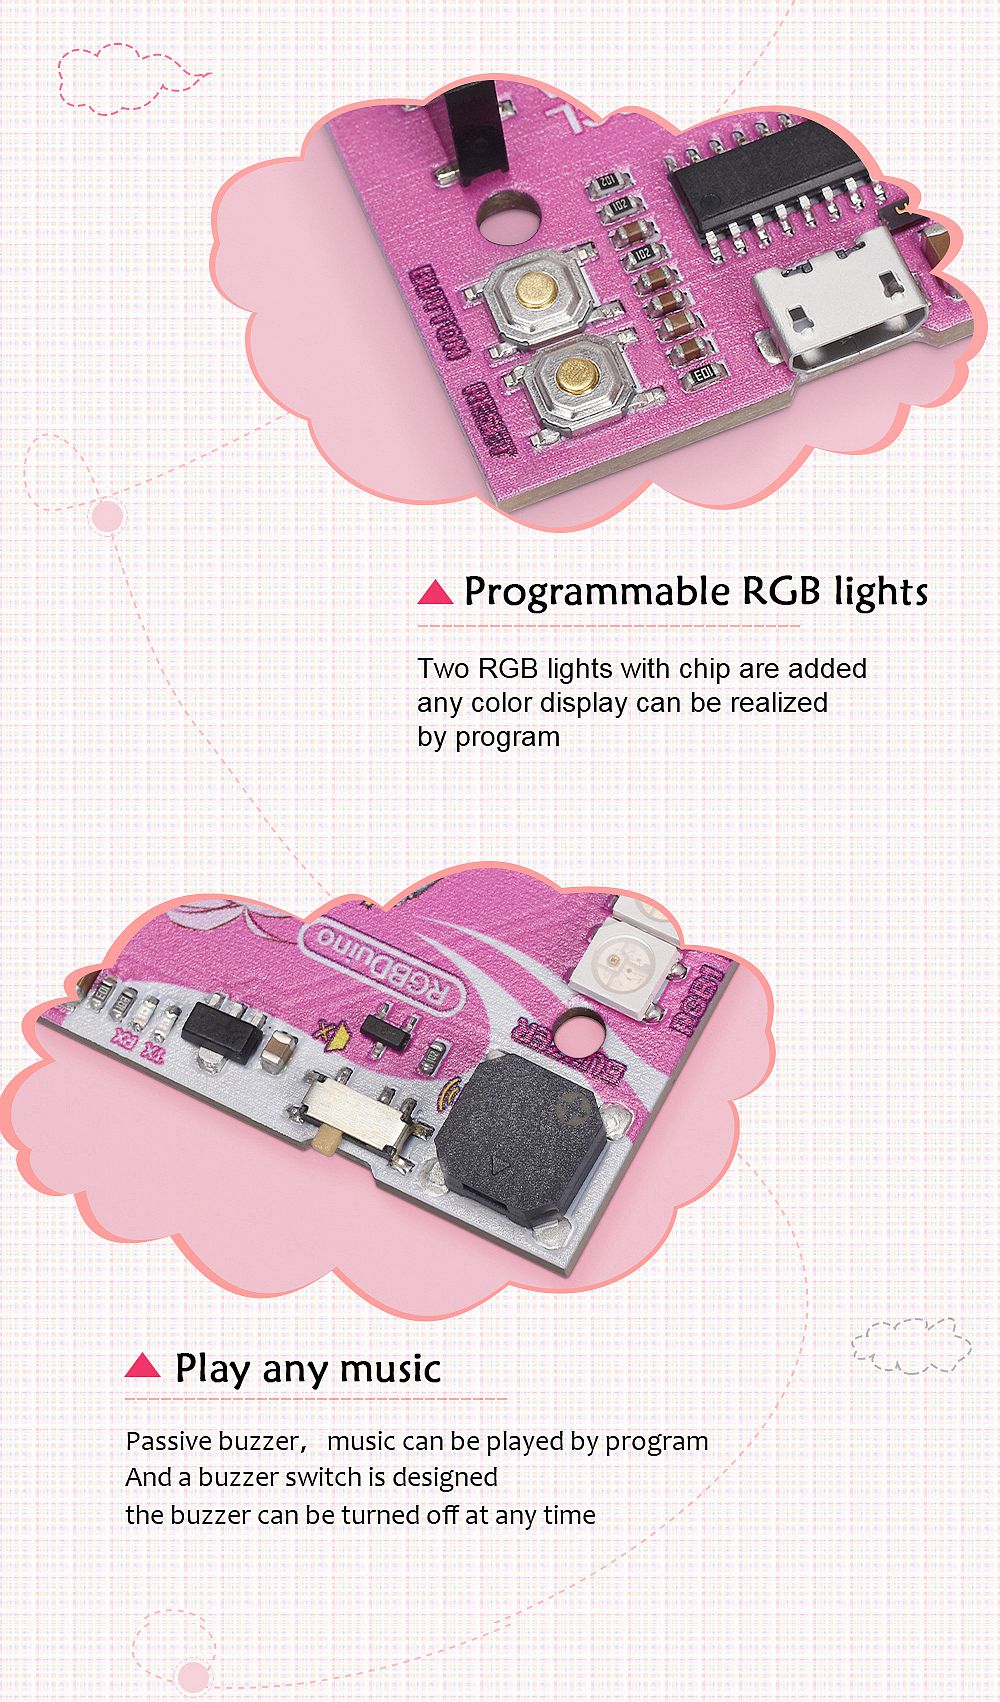 RGBDuino-UN0-V12-Jenny-Development-Board-ATmega328P-Chip-CH340C-VS-UN0-R3-Upgrade-for-Raspberry-Pi-4-1732472-8